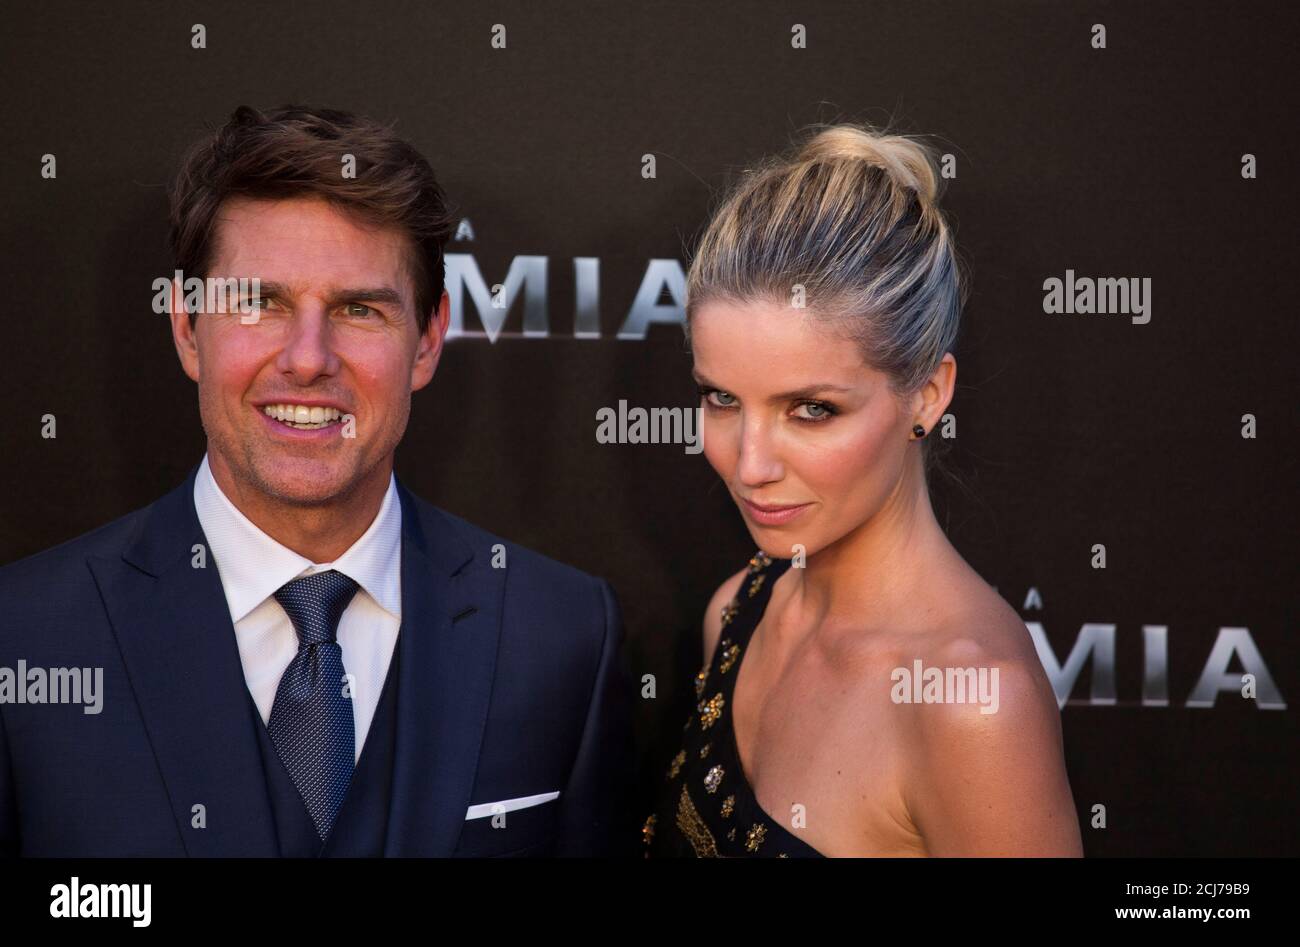 Schauspieler Tom Cruise und Schauspielerin Annabelle Wallis stellen, da sie  ihren neuesten Film "Die Mumie" in Madrid, Spanien, 29. Mai 2017 fördern.  REUTERS/Sergio Perez Stockfotografie - Alamy